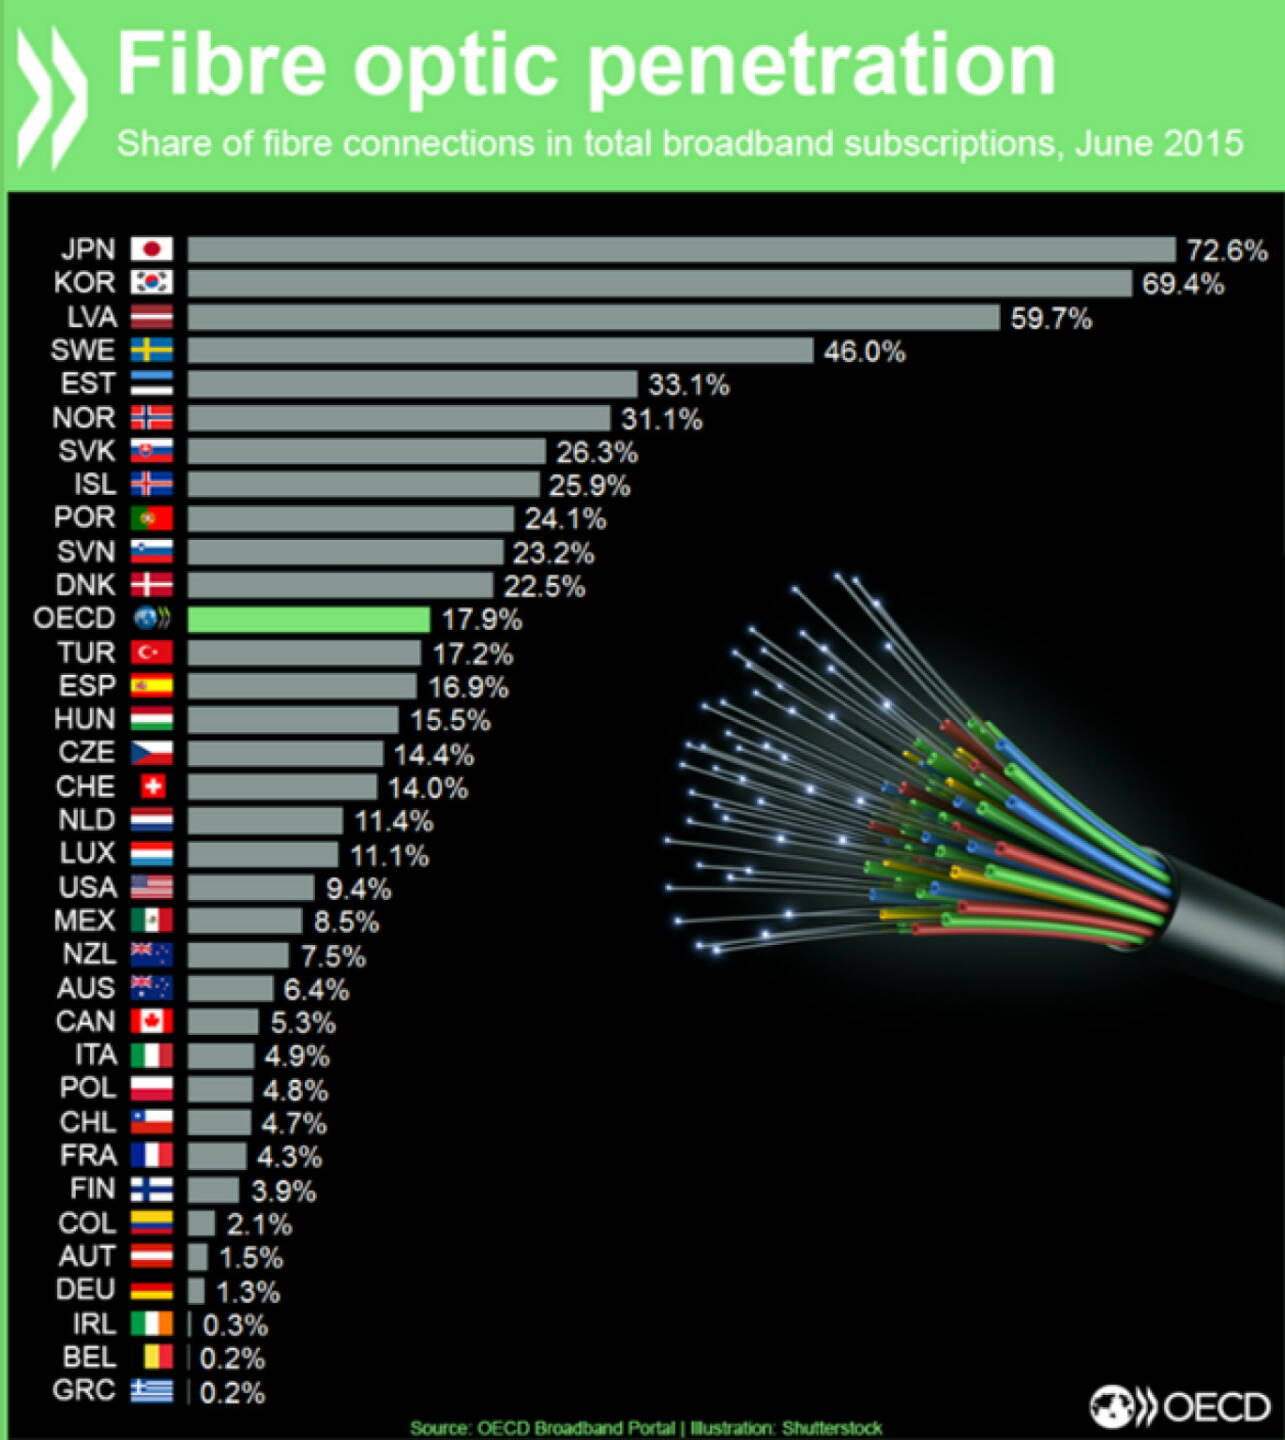 Nur 1,3% der Breitbandanschlüsse in Deutschland werden per Glasfaser betrieben (Österreich: 1,5%, Schweiz: 14%).
http://bit.ly/oecd-broadband